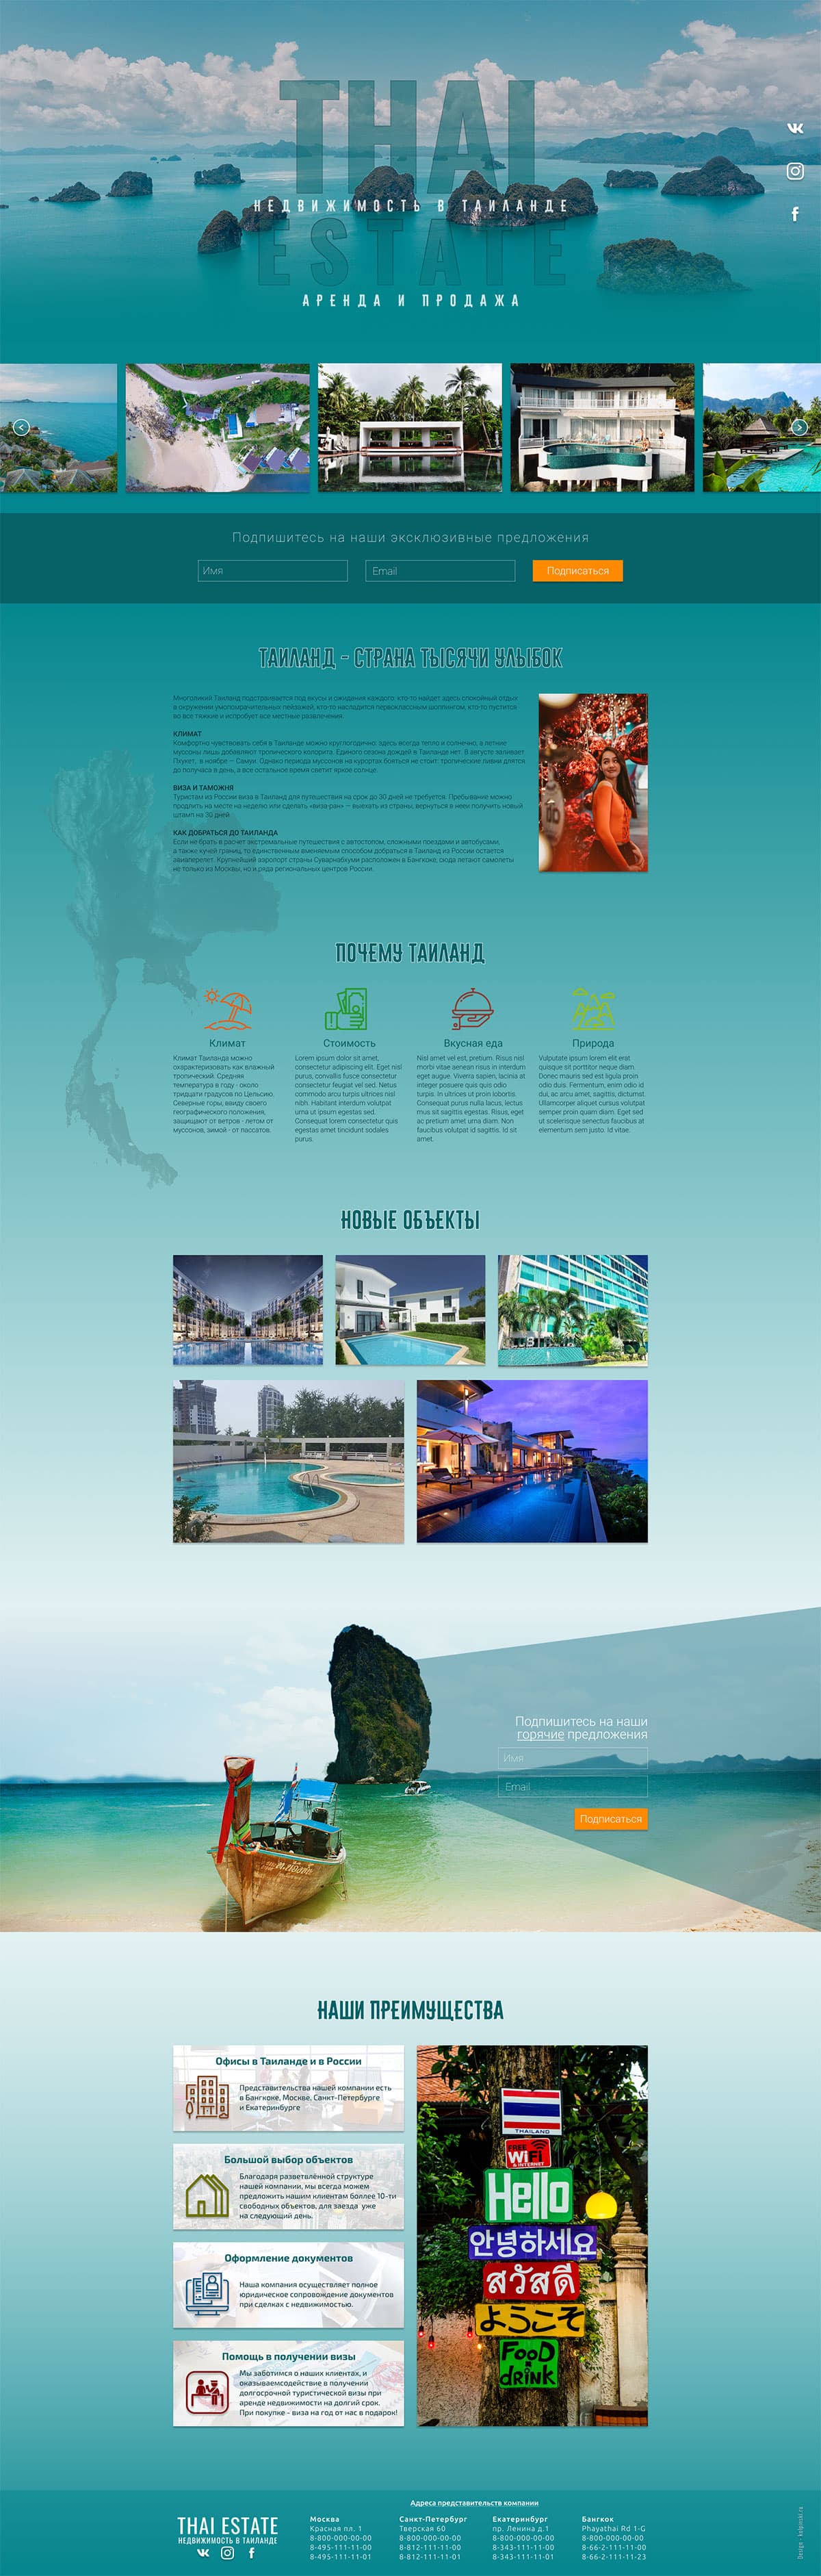 Thai Estate - Дизайн landingpage для агентства недвижимости в Таиланде